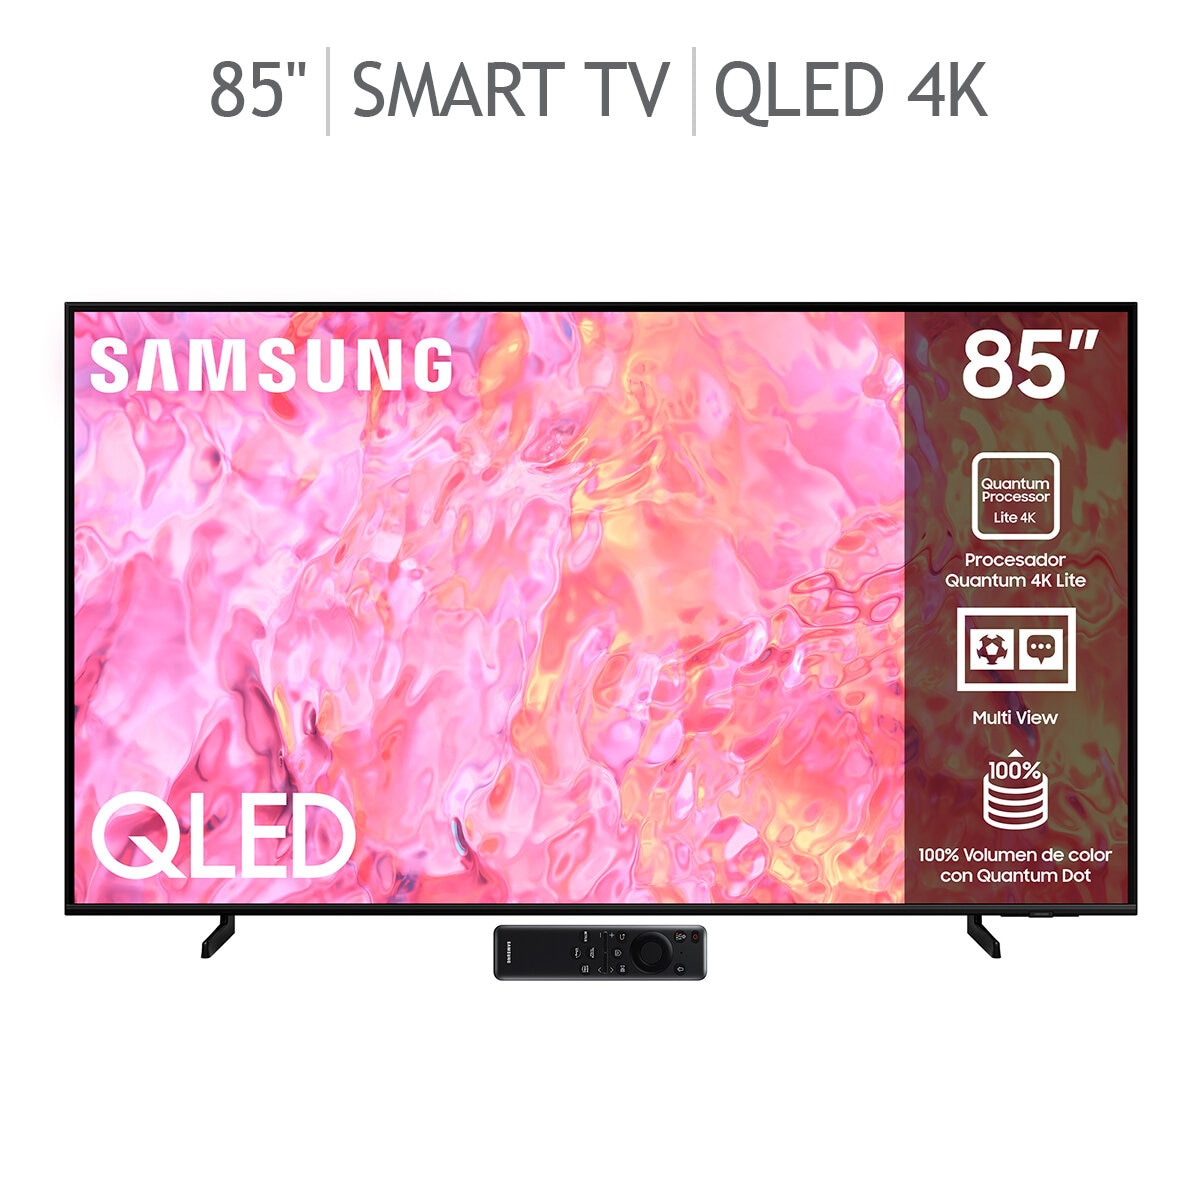 Samsung 85" QLED 4K Smart TV